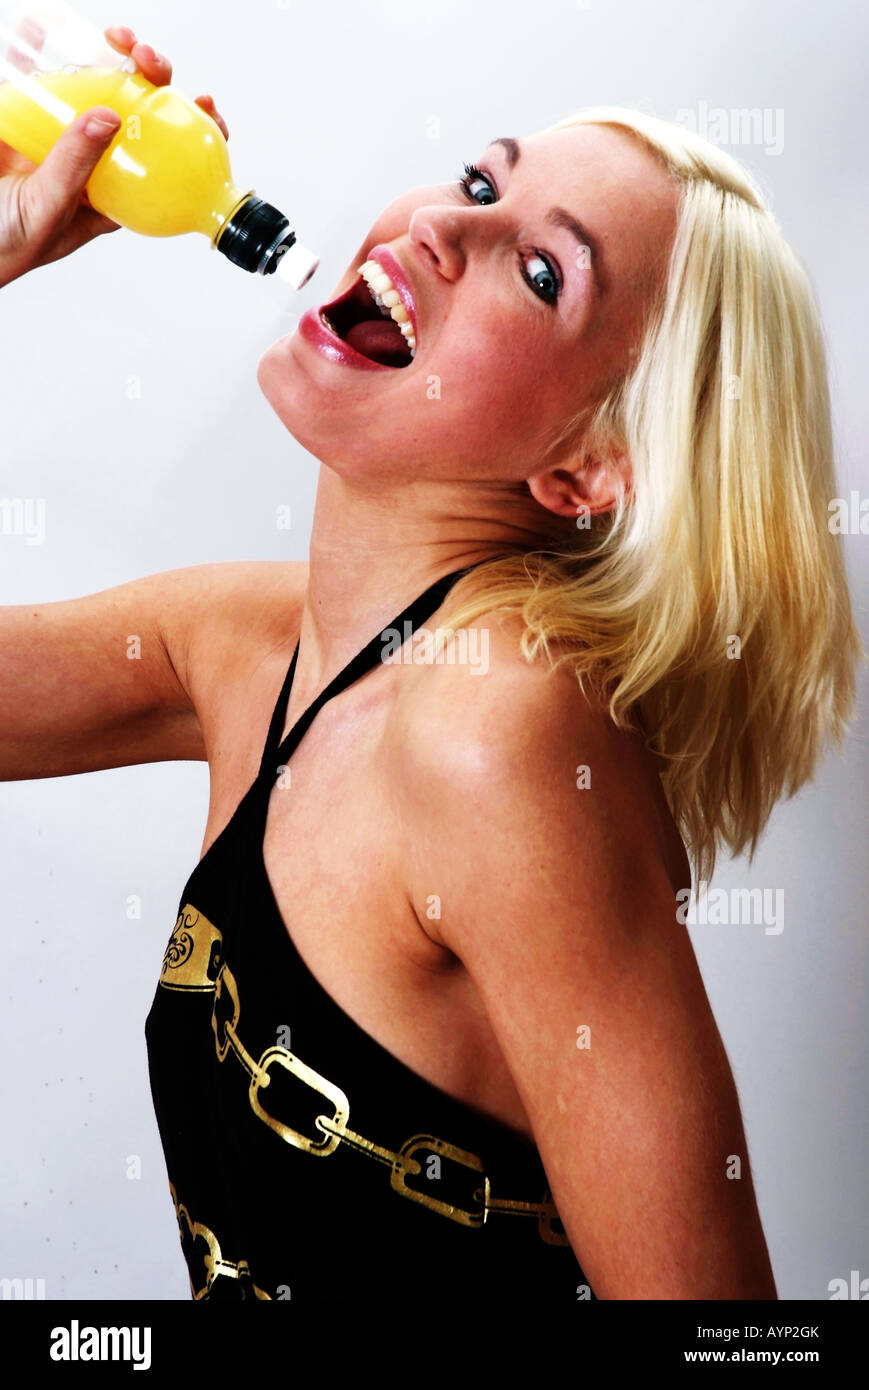 Blond woman drinking from a juice bottle | Blonde lachende Frau drinkt aus einer Saftflasche Stock Photo